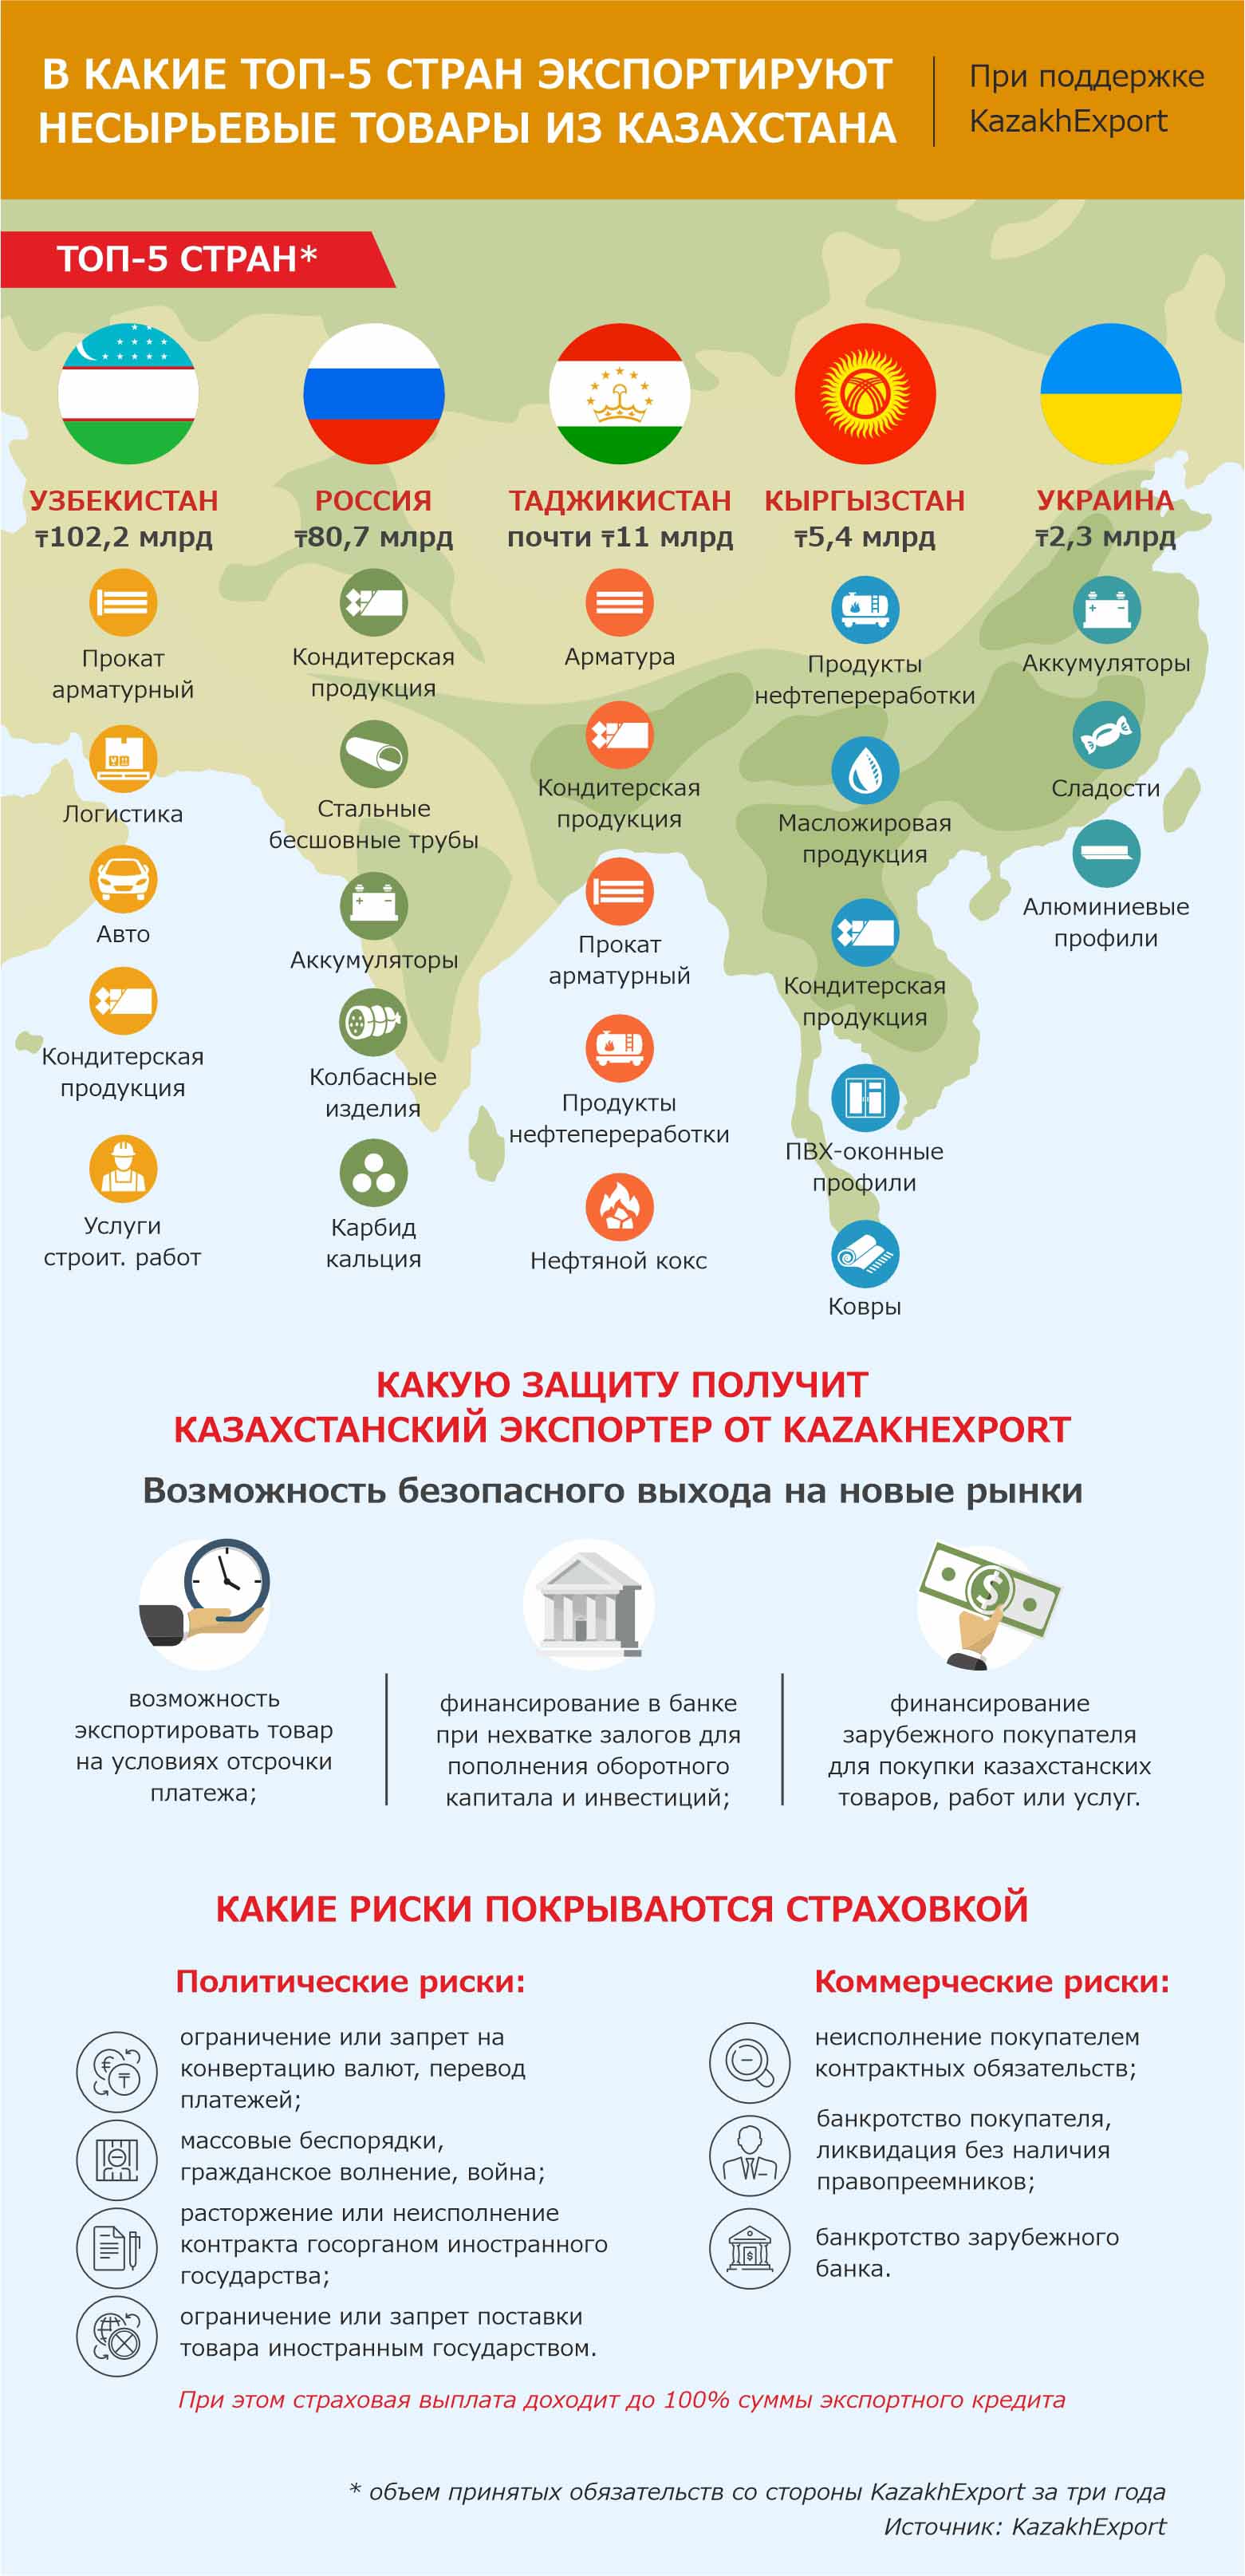 Источник: Kazakh Export